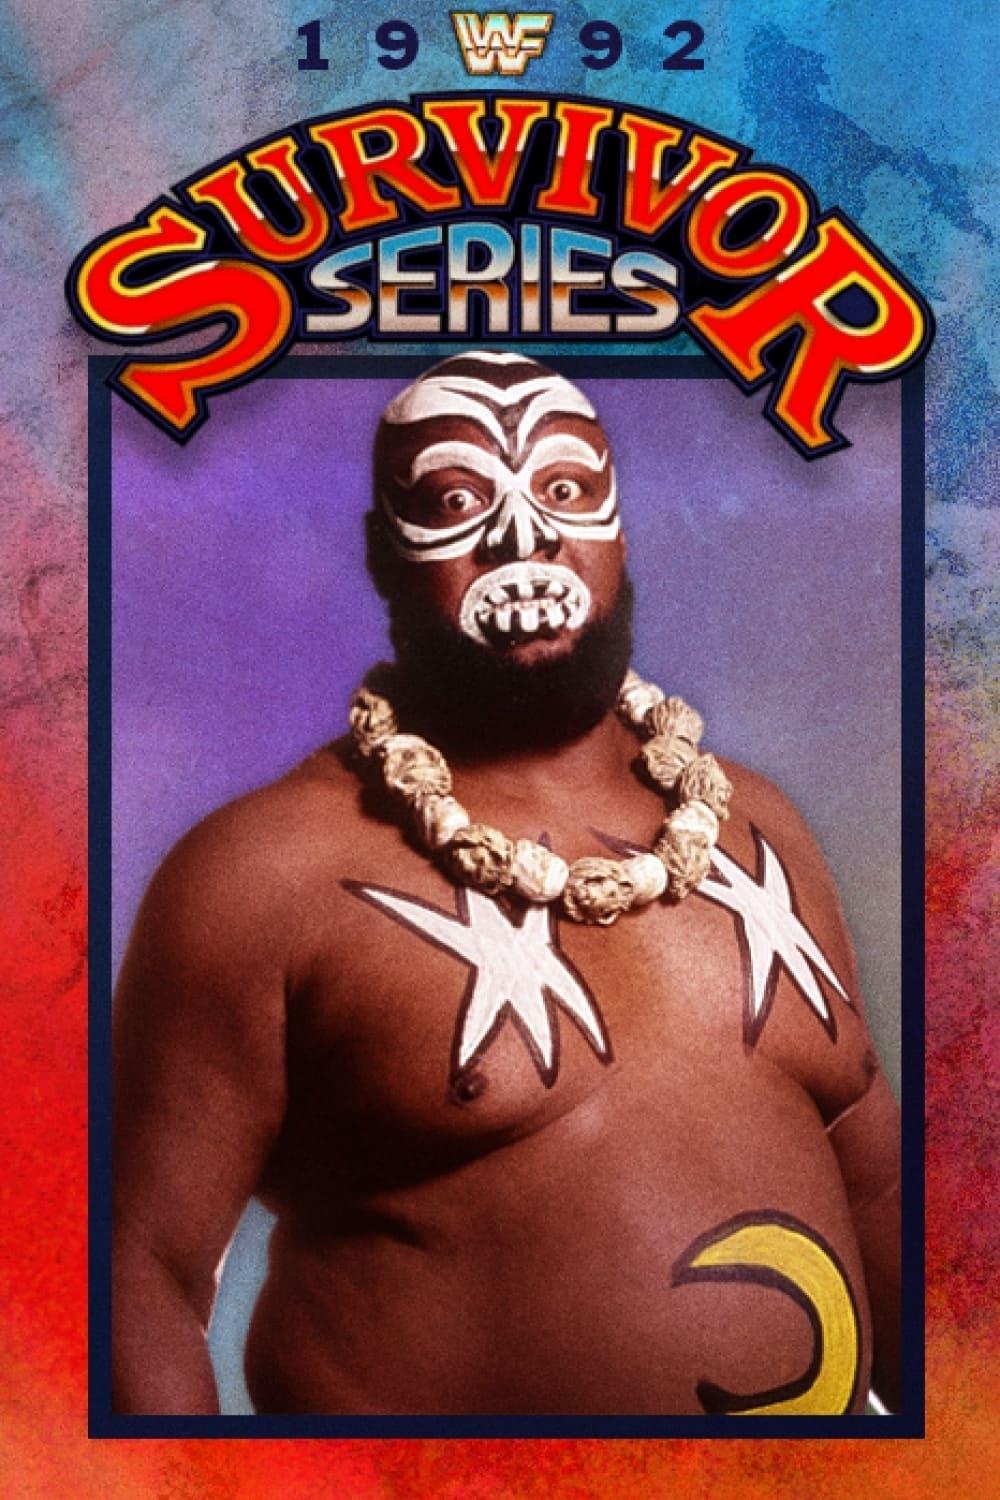 WWE Survivor Series 1992 poster